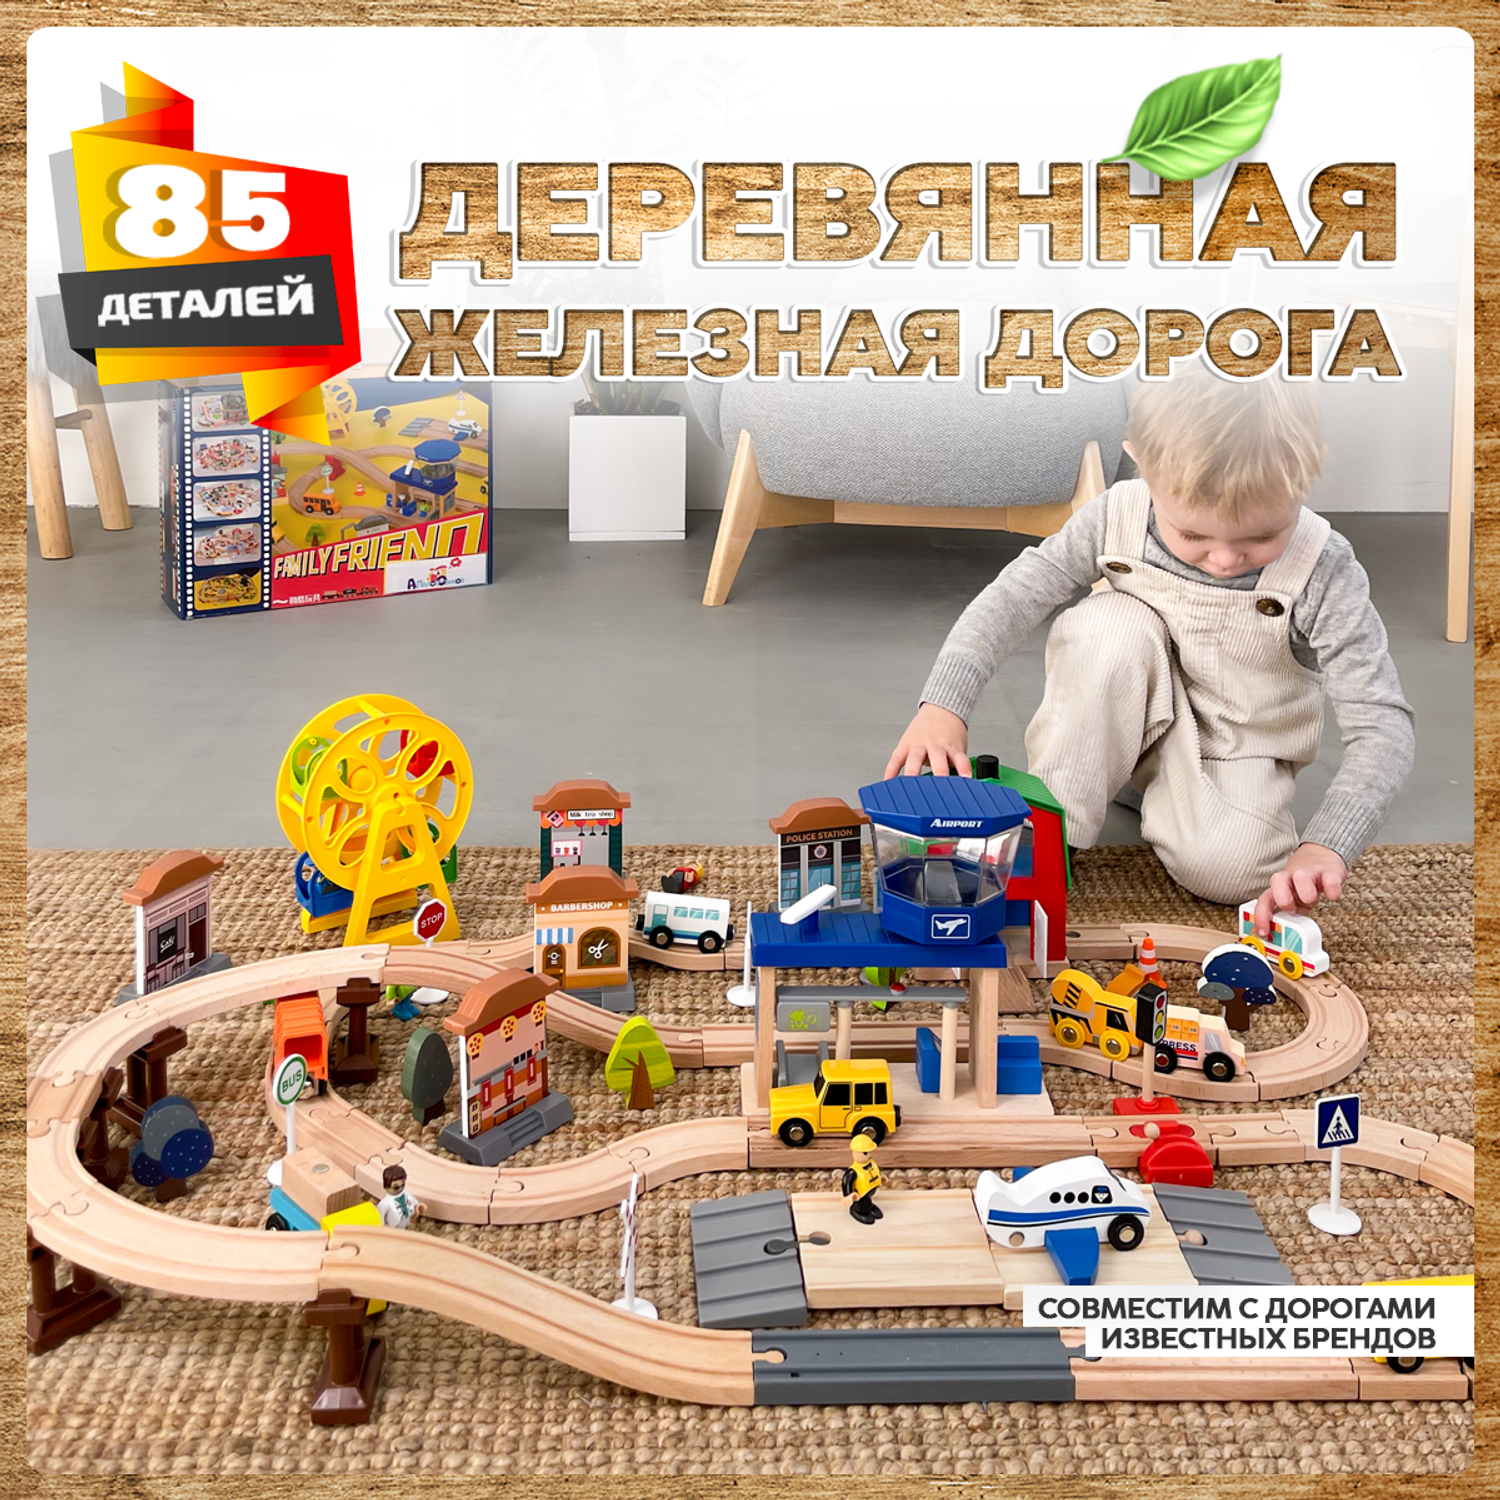 Деревянная железная дорога А.Паровозиков 85 деталей развивающая игрушка для детей АП-006/ПЛ0013-85 - фото 1